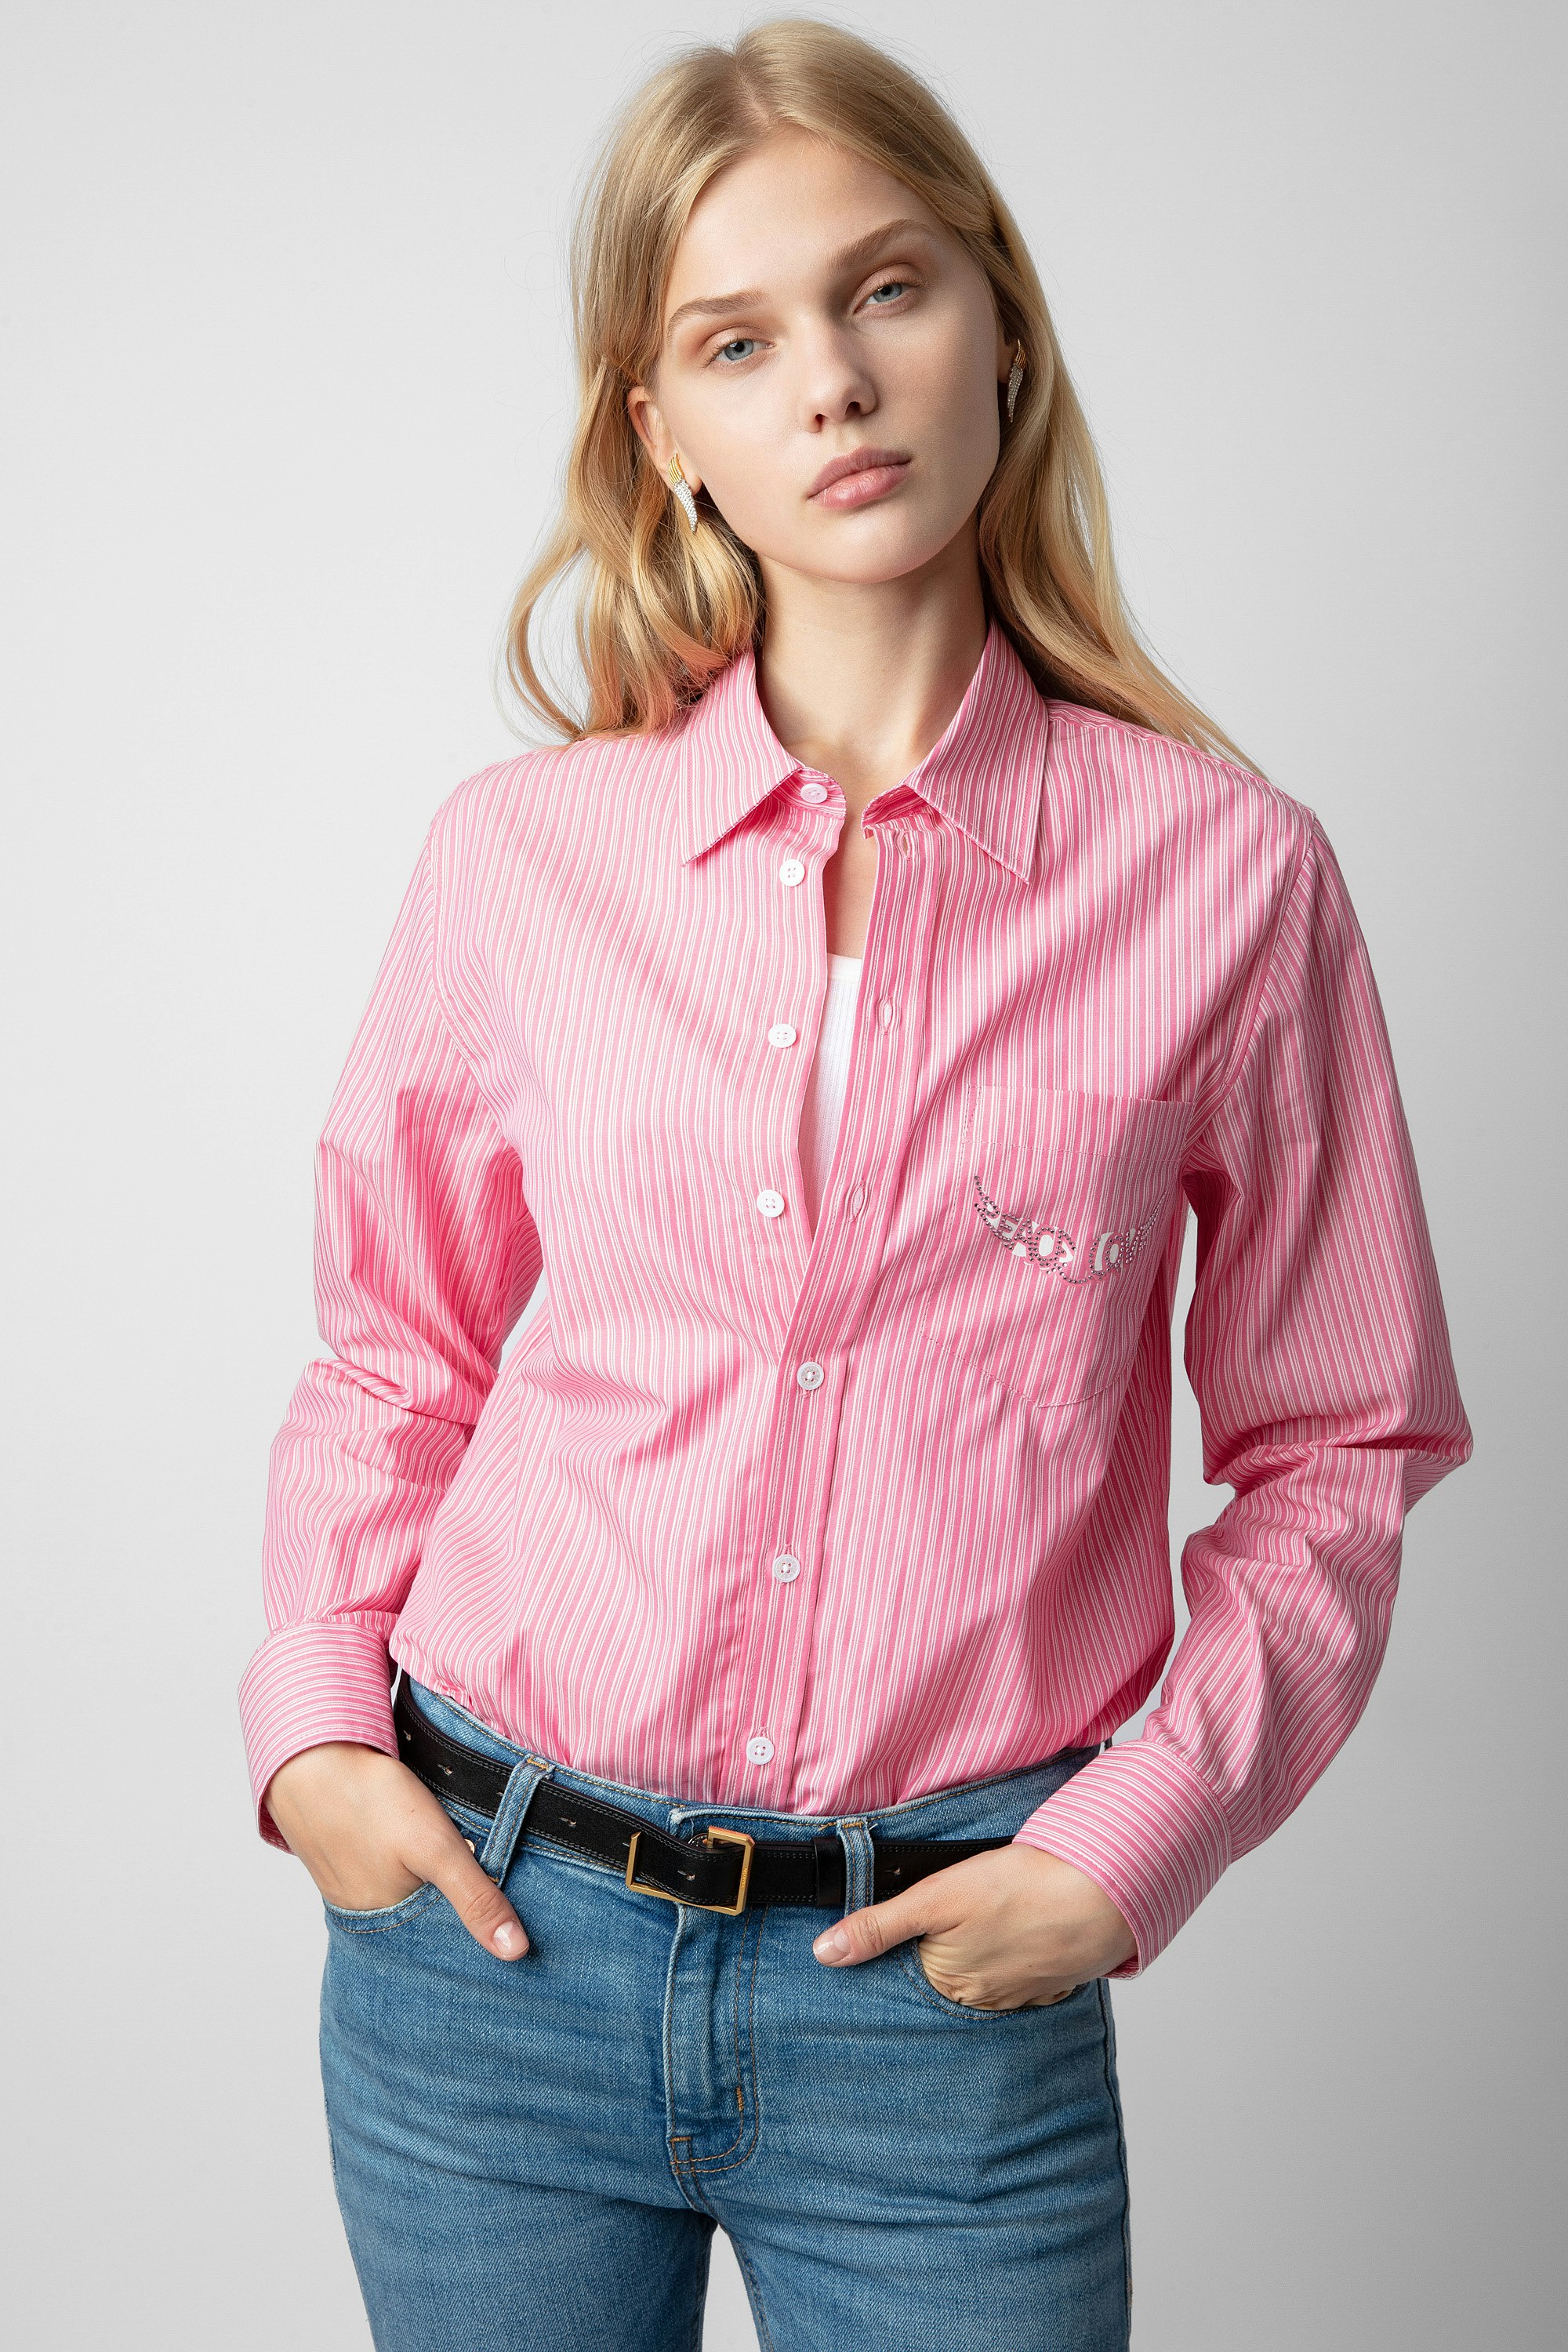 Camicia Taskiz Strass - Camicia da donna in cotone rosa a righe con scritta "Peace & Love" in strass a forma di ali.